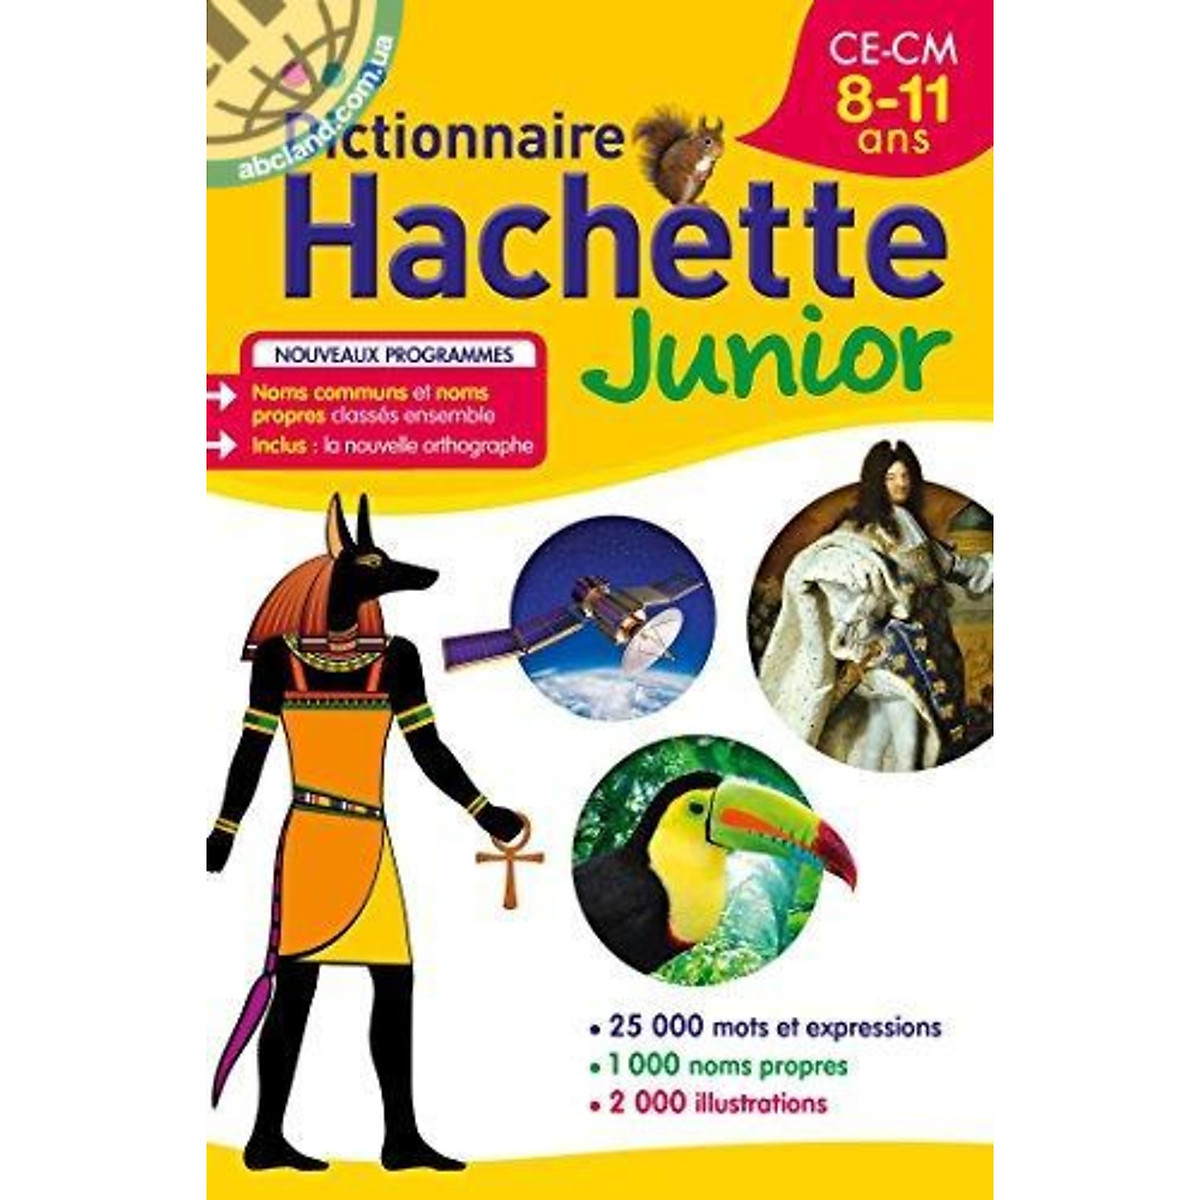 Từ điển tiếng Pháp: Dictionnaire Hachette Junior - CE-CM - 8-11 ans (từ 8 đến 11 tuổi)